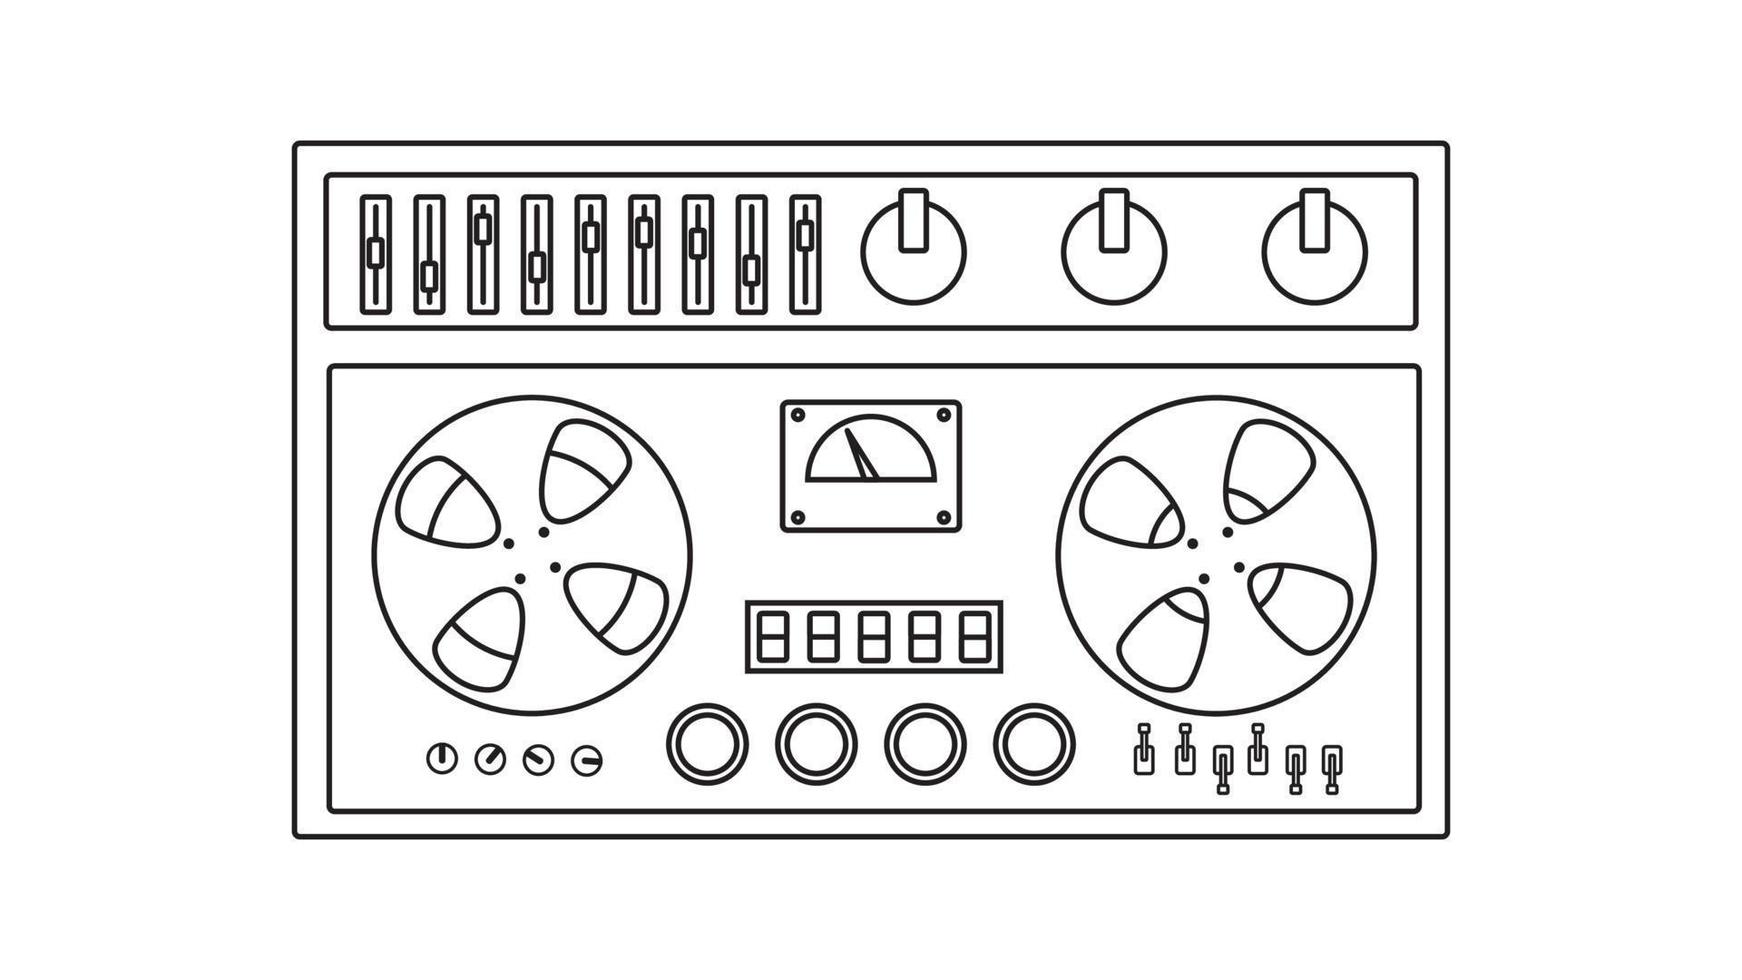 antigua grabadora de cinta de casete de música retro vintage con cinta magnética en carretes de los años 70, 80, 90. icono blanco y negro. ilustración vectorial vector